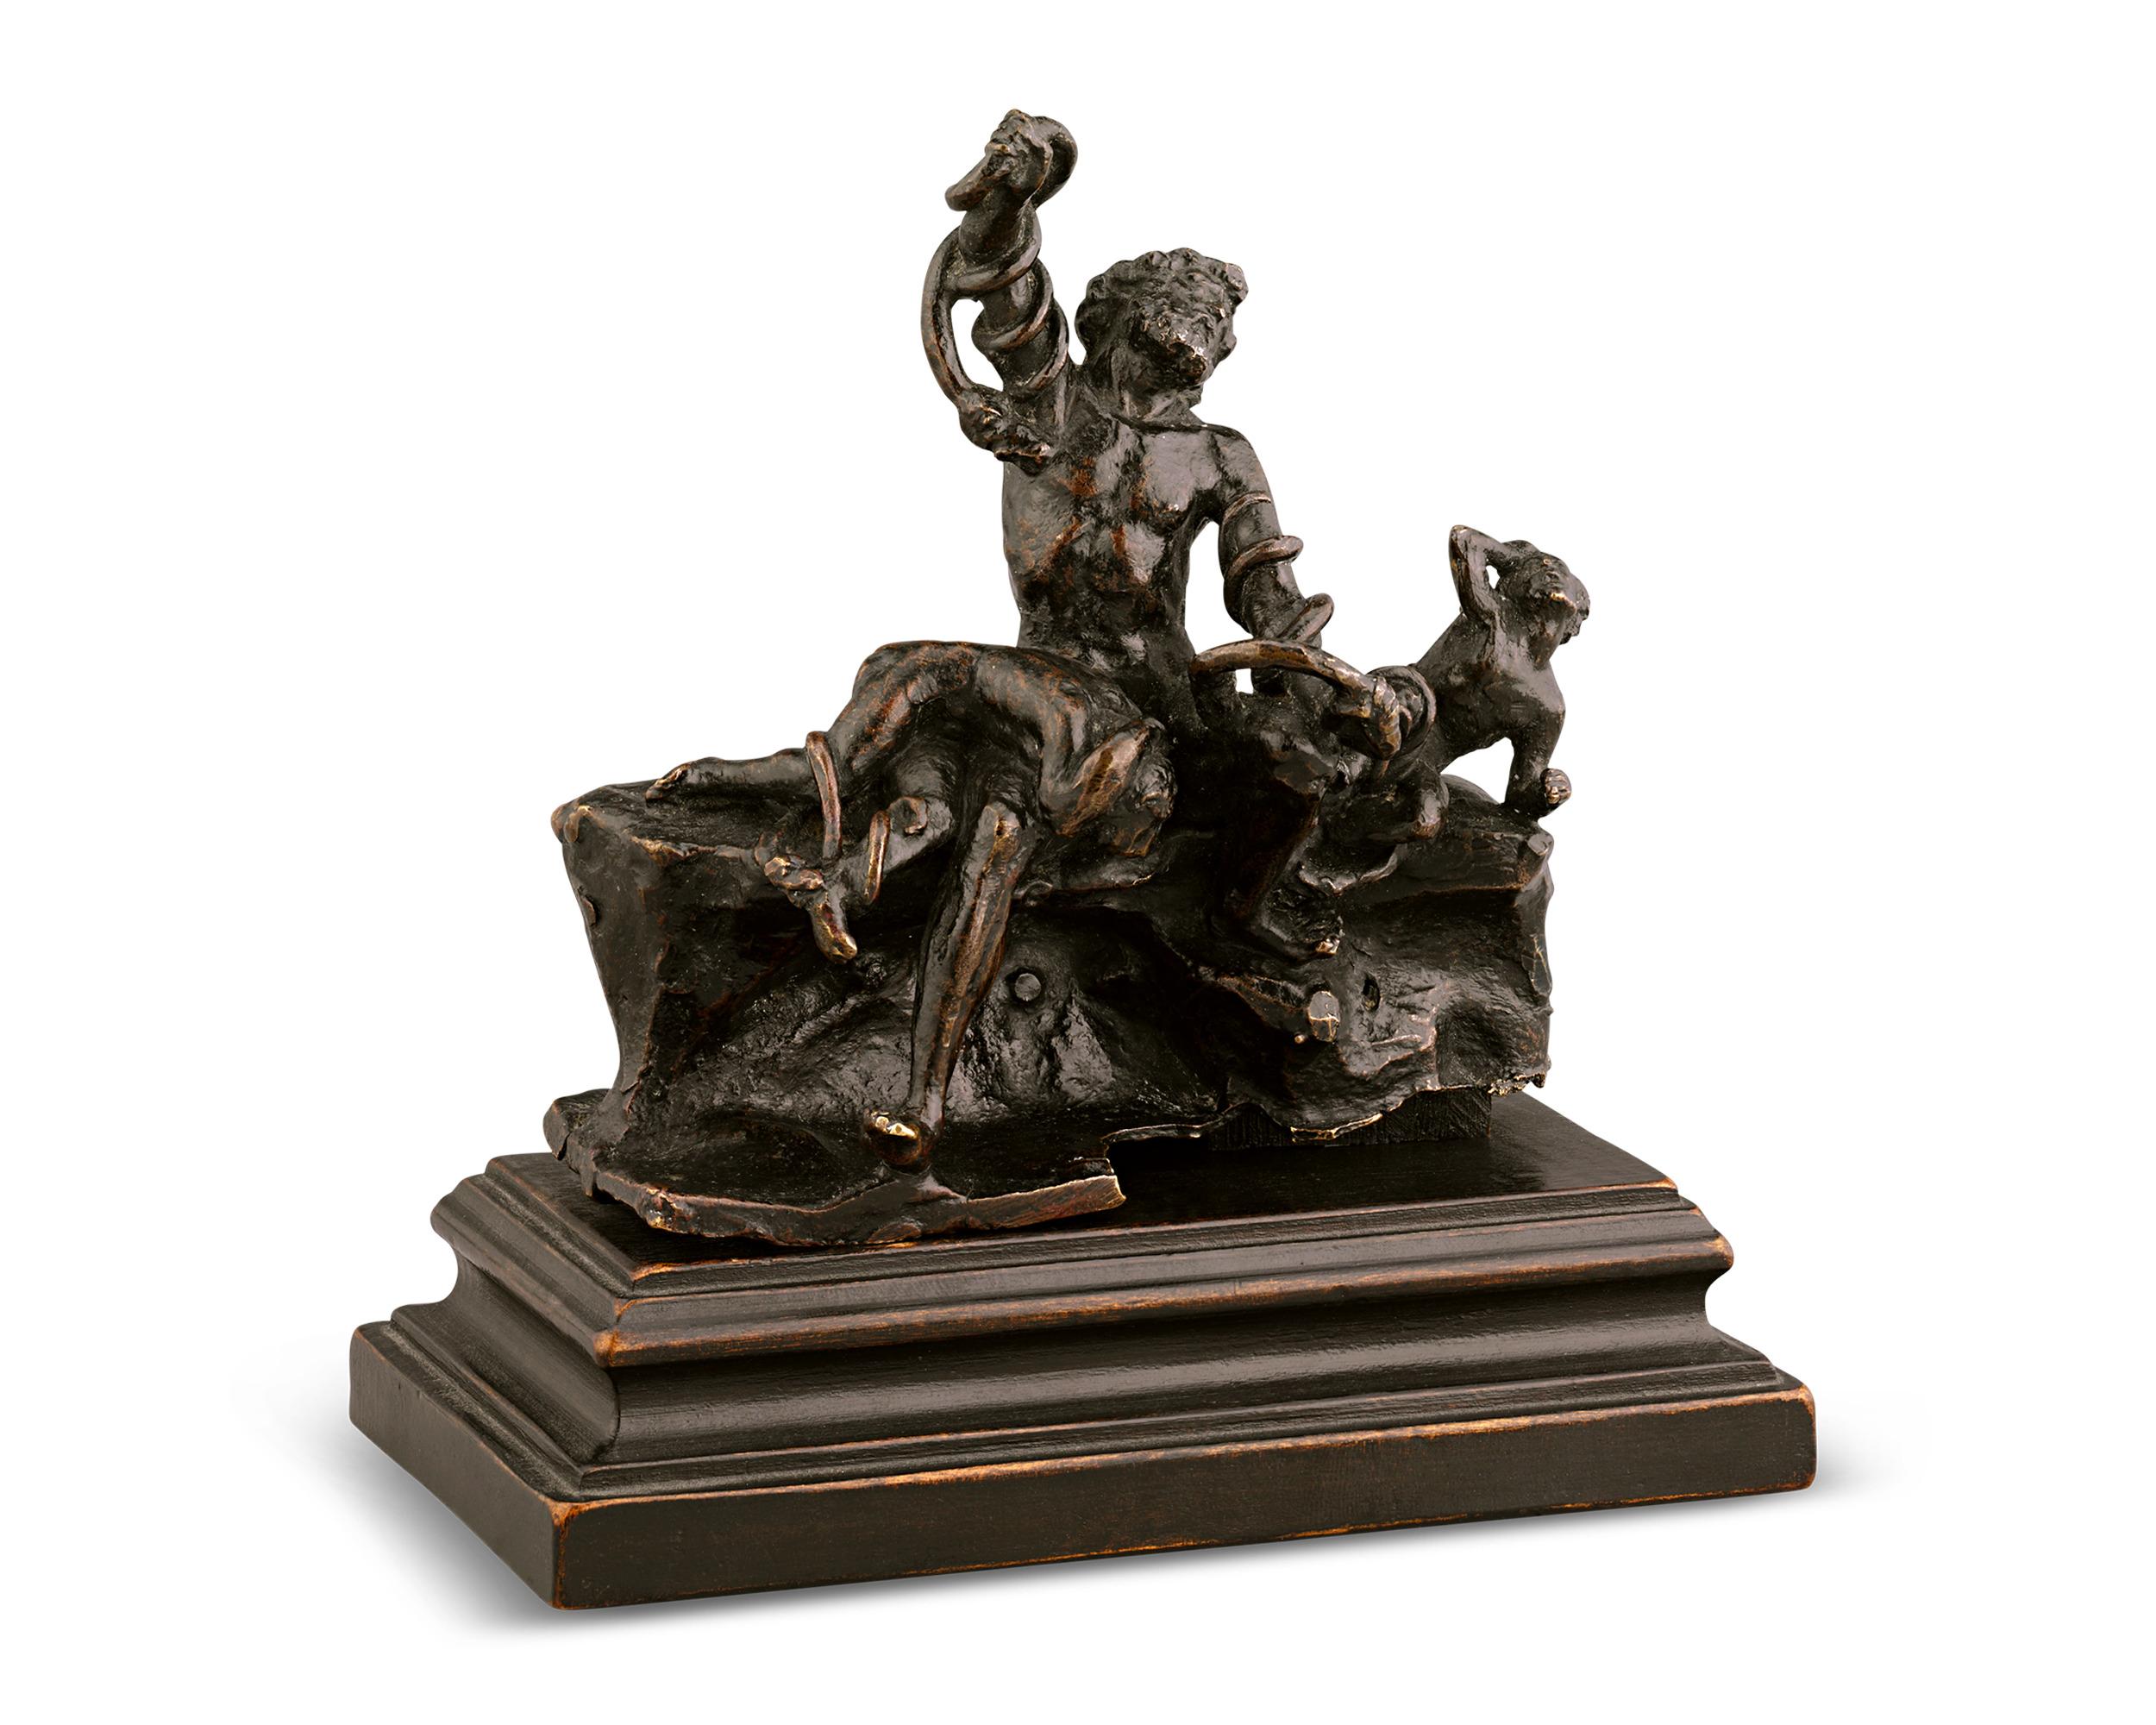 Laocoön And His Sons By Adriaen De Vries - Sculpture by Adriaen de Vries